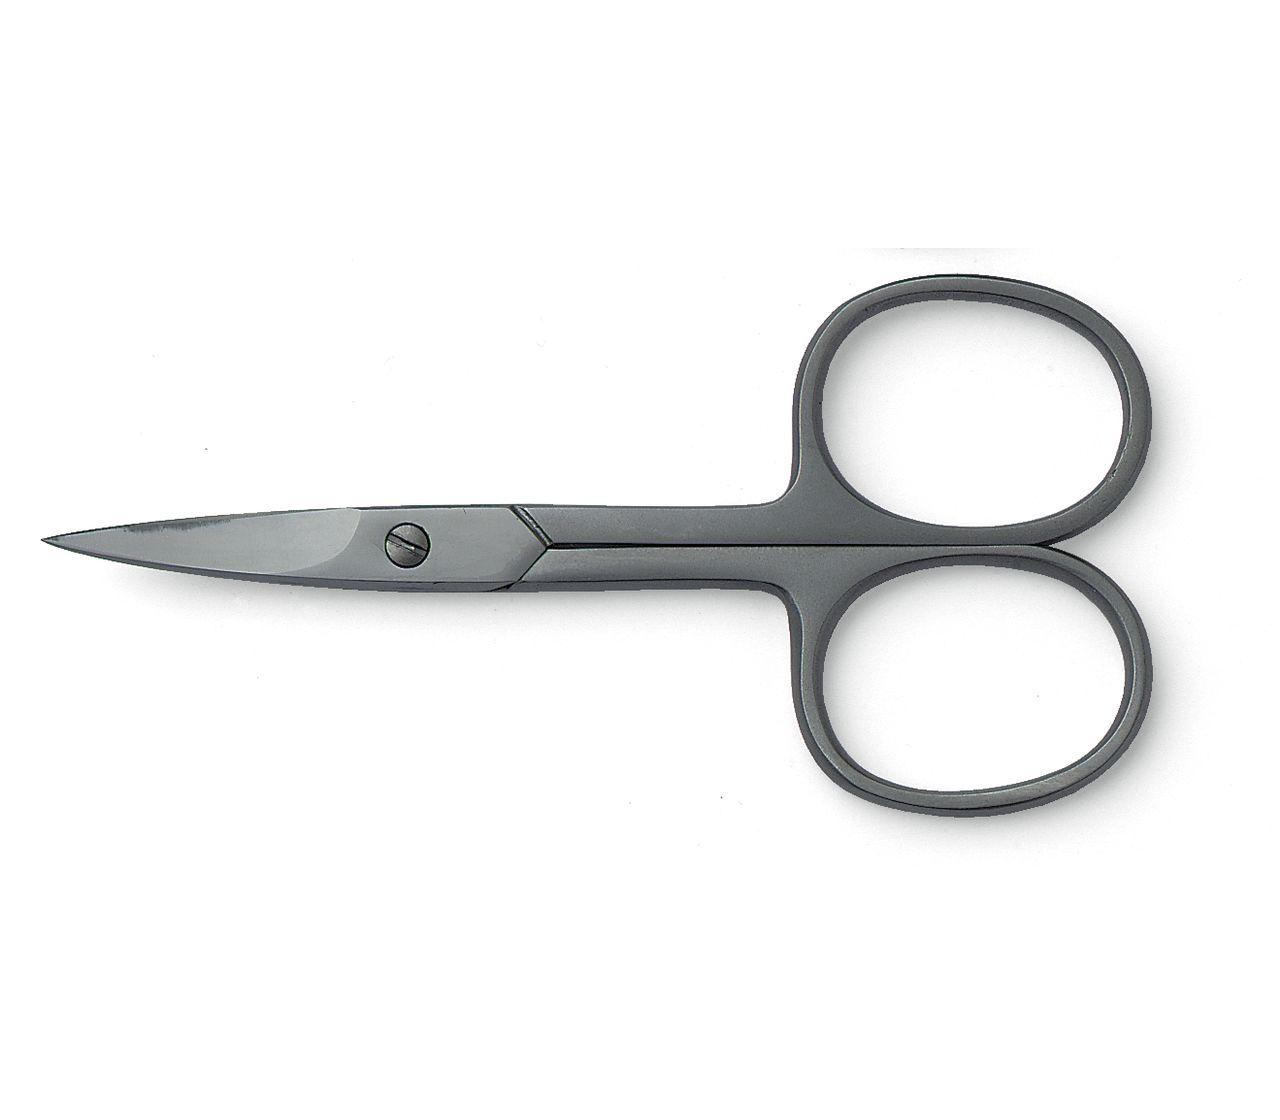 nail scissors /cuticle scissors/ manicure scissors